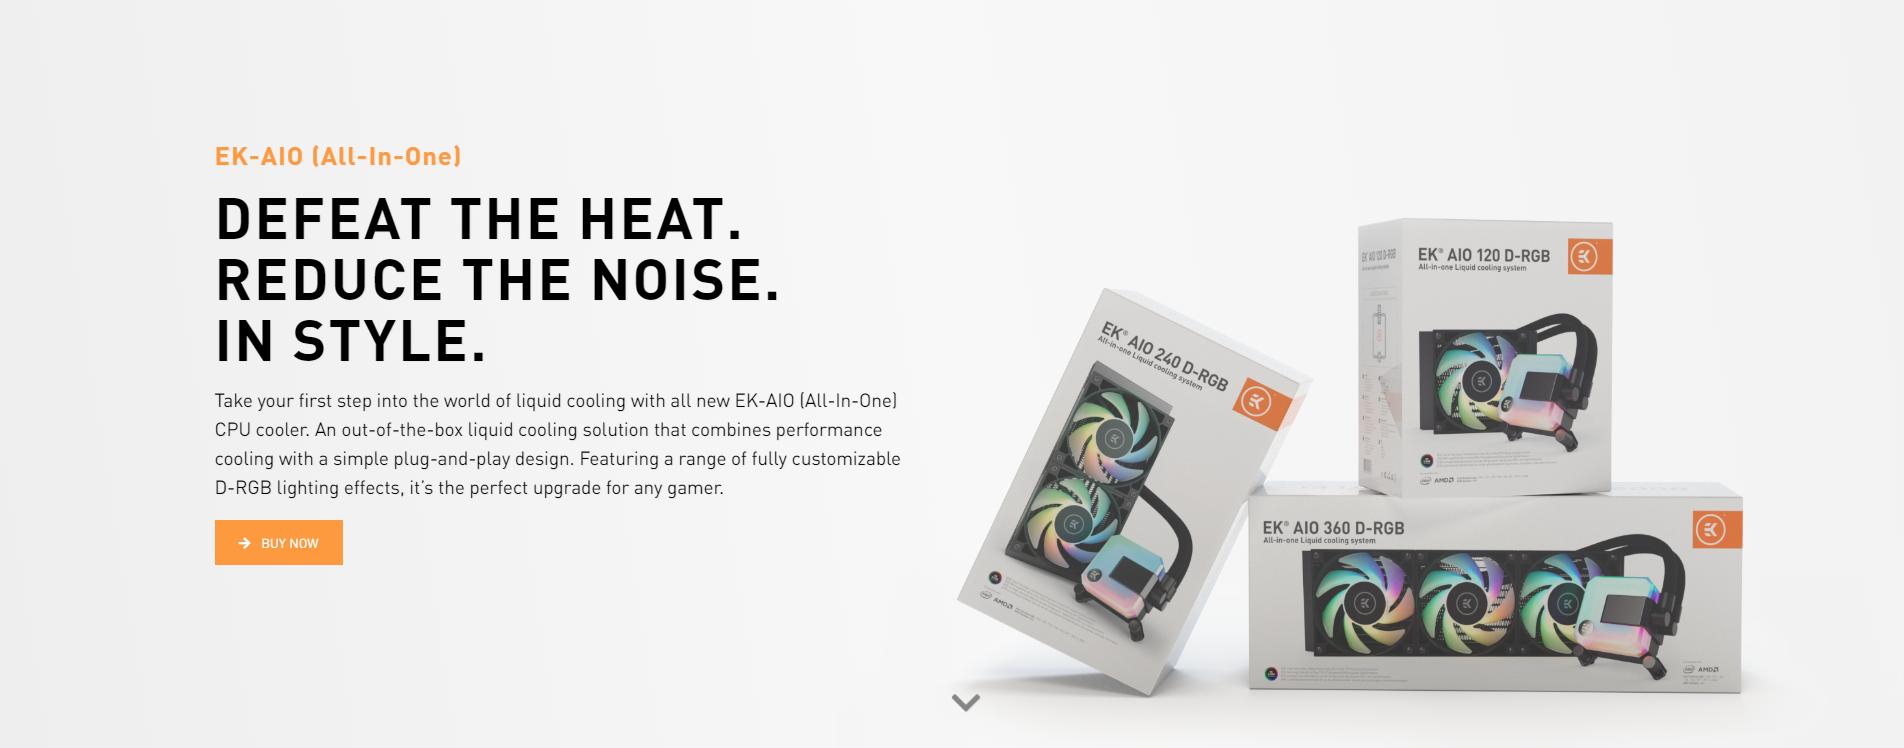 Tản nhiệt nước EK-AIO 120 D-RGB đánh bại nhiệt độ - Giảm thiểu độ ồn - Mang đến phong cách riêng